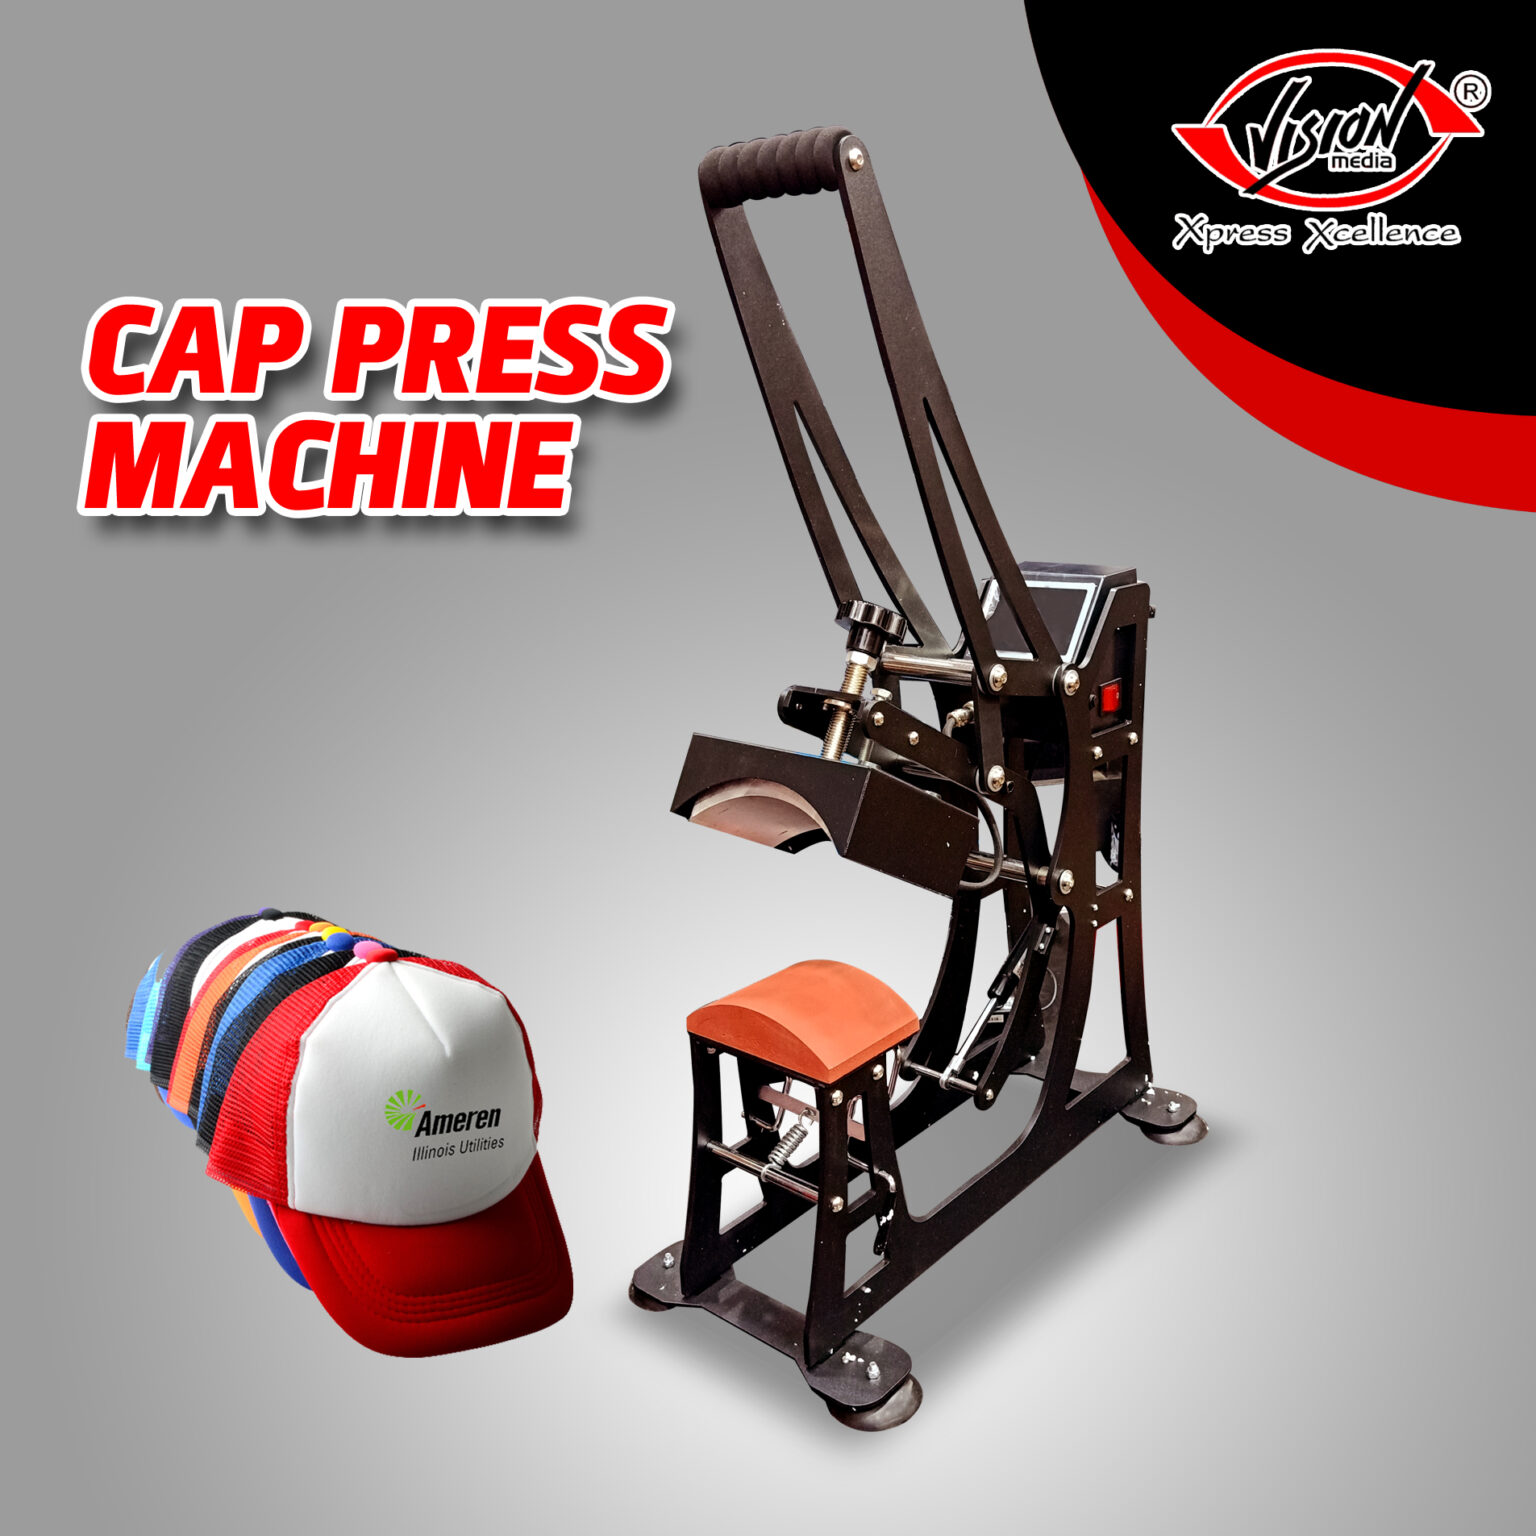 CAP PRESS MACHINE